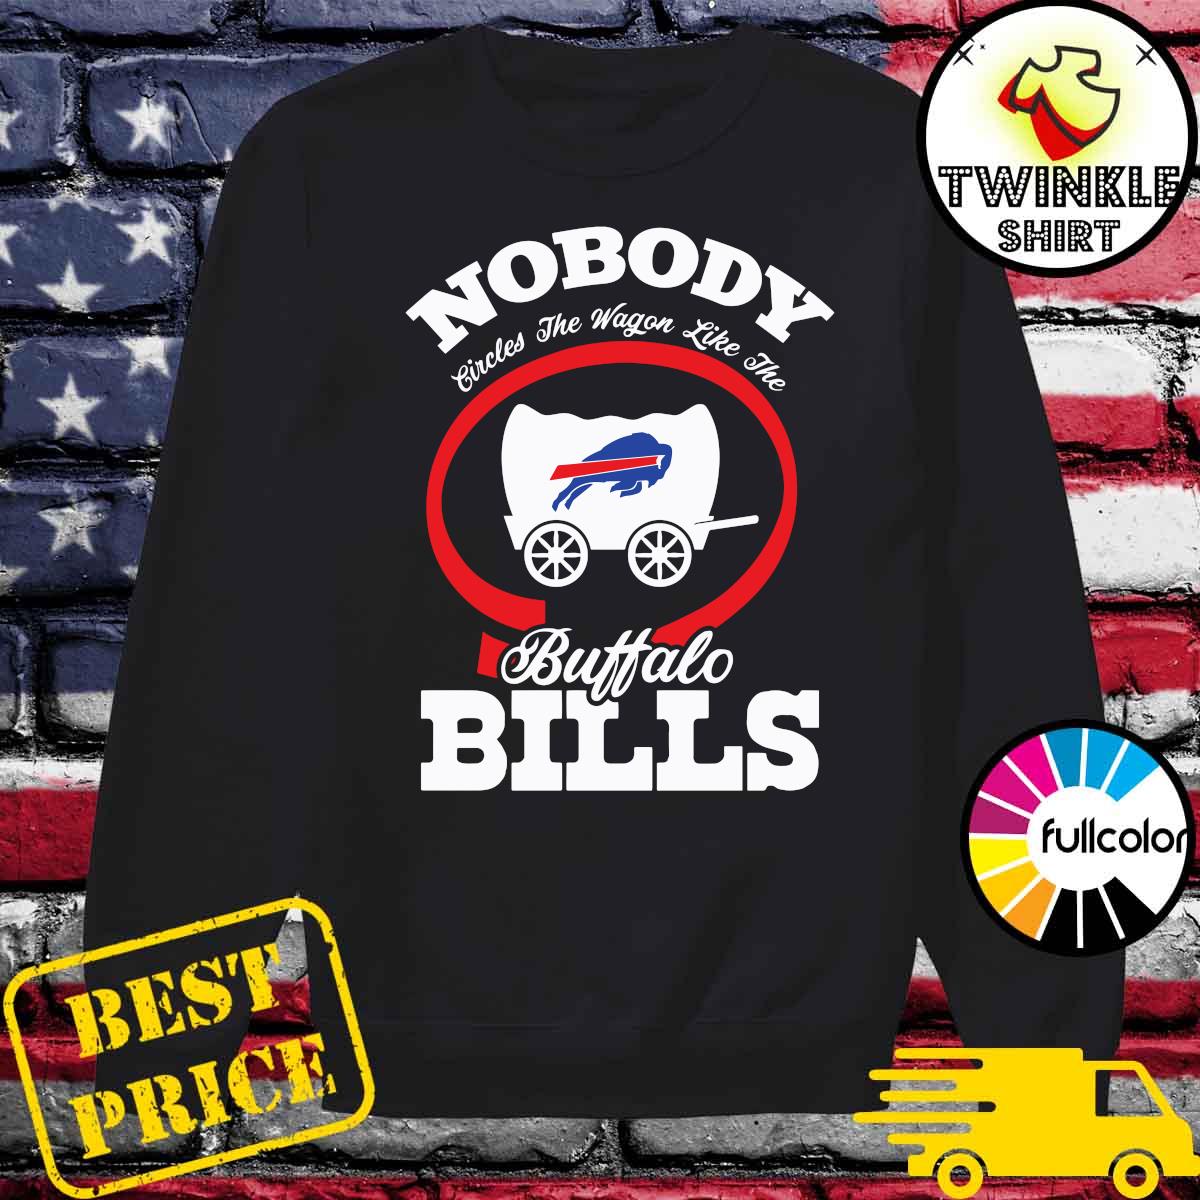 no body Buffalo Bills T-Shirt custom